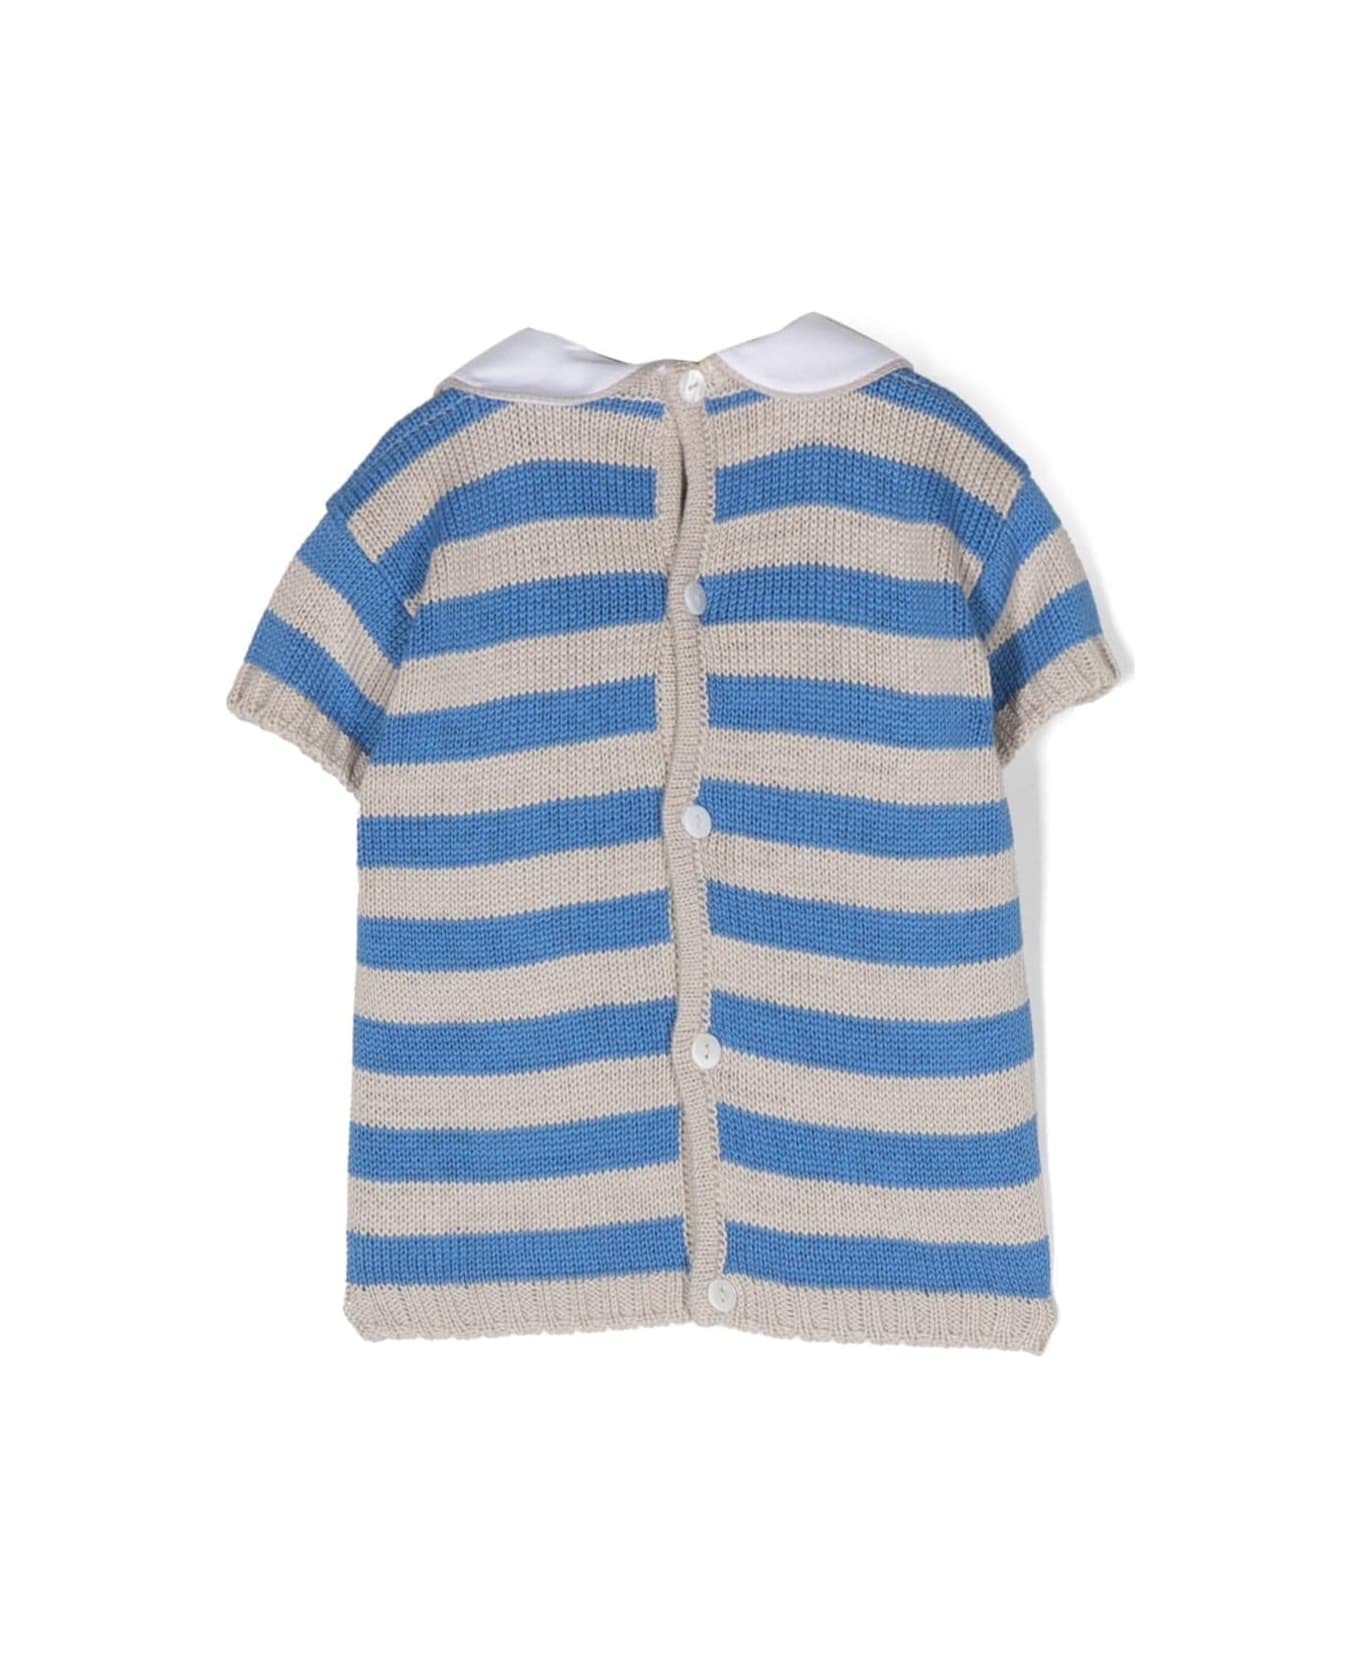 Little Bear Striped Shirt - Light blue